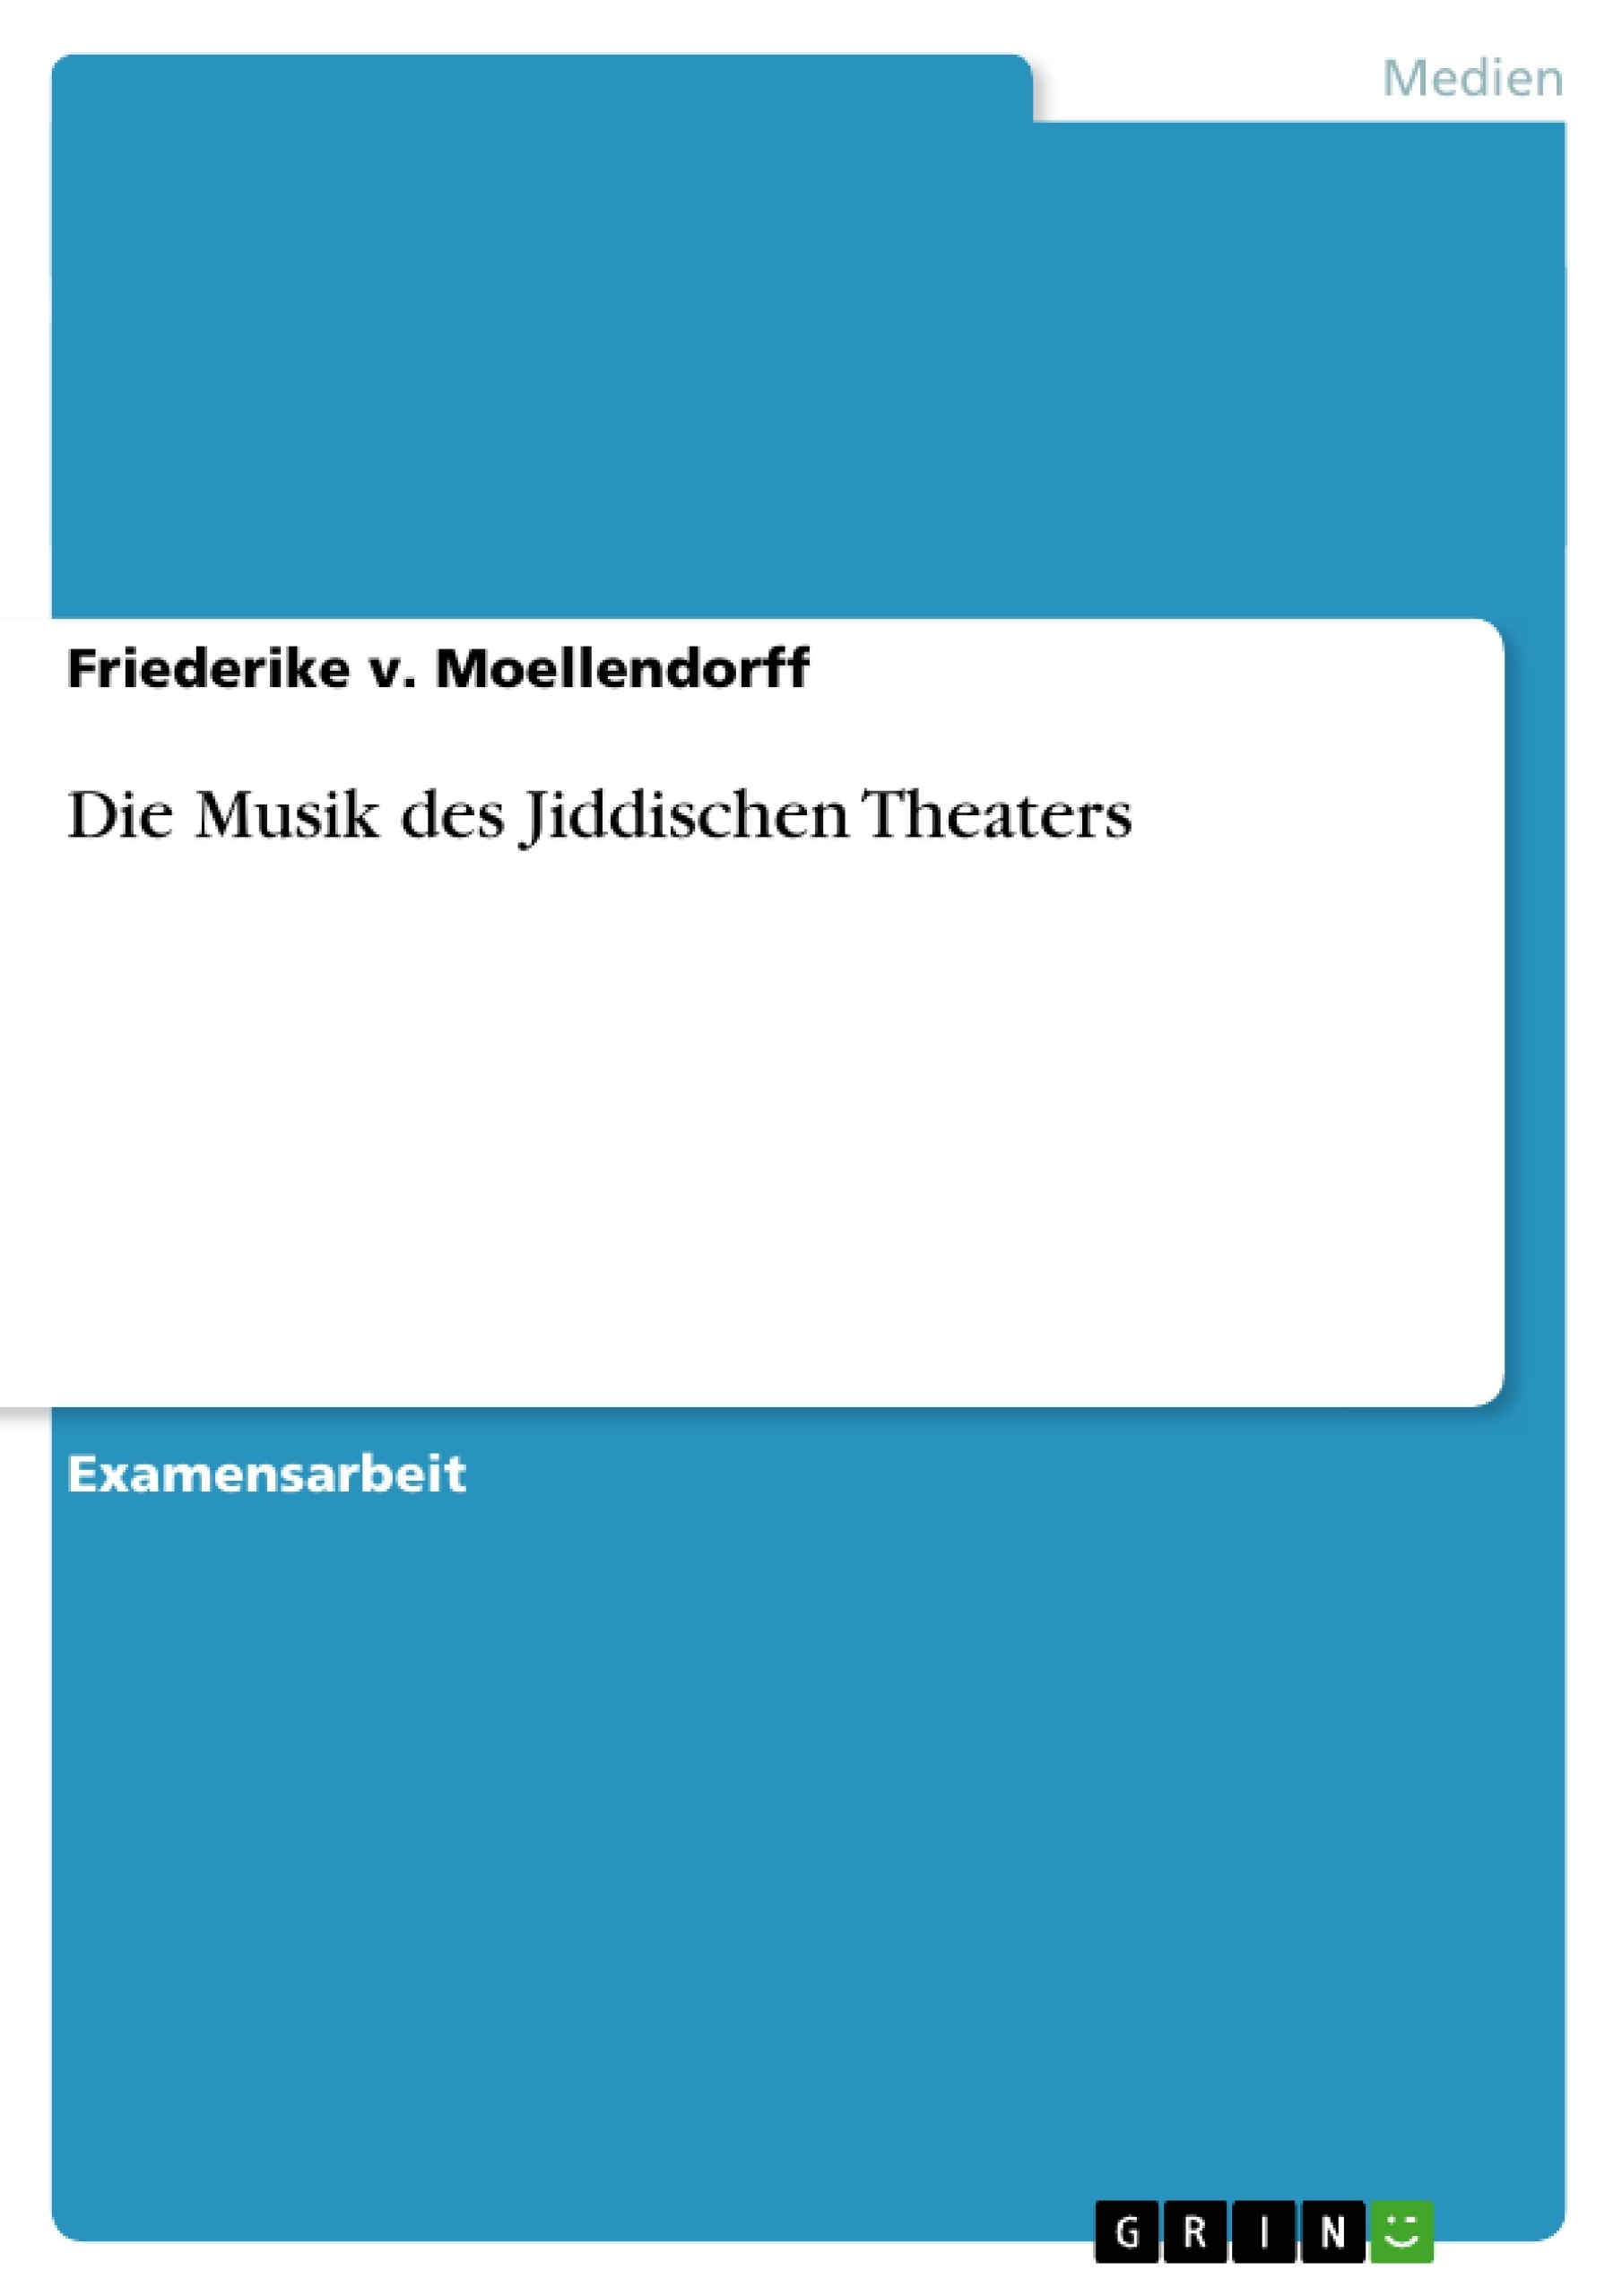 Título: Die Musik des Jiddischen Theaters